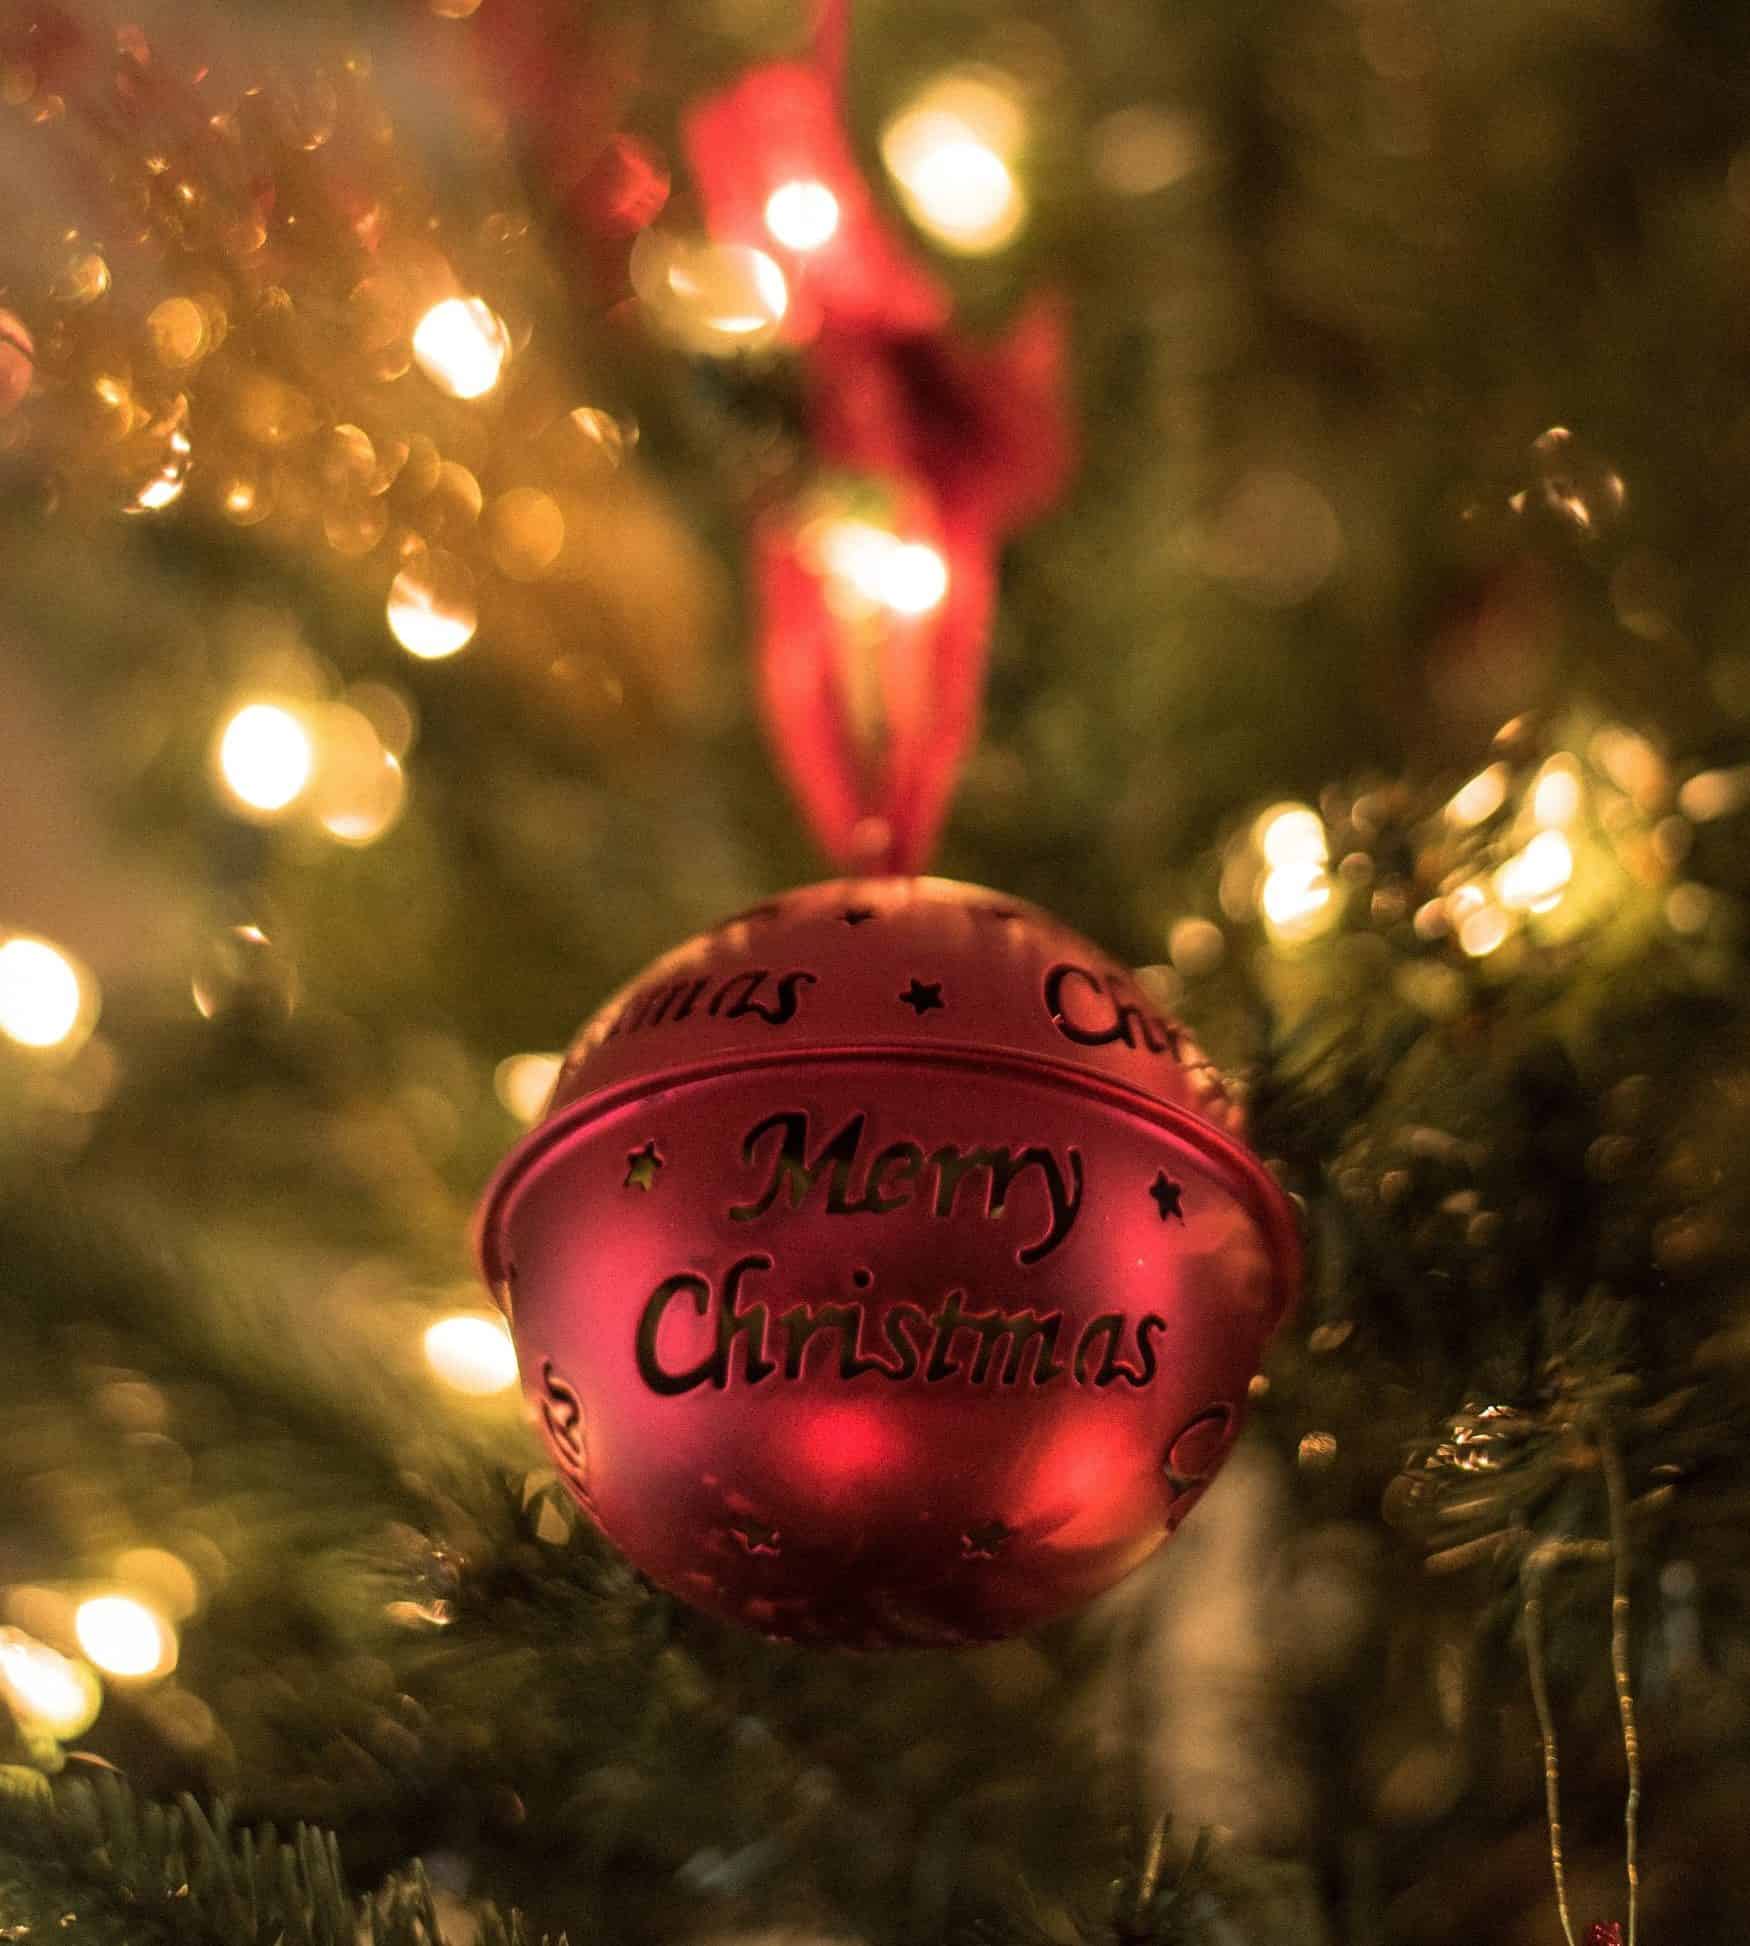 Christbaumkugel mit merry christmas aufschrift